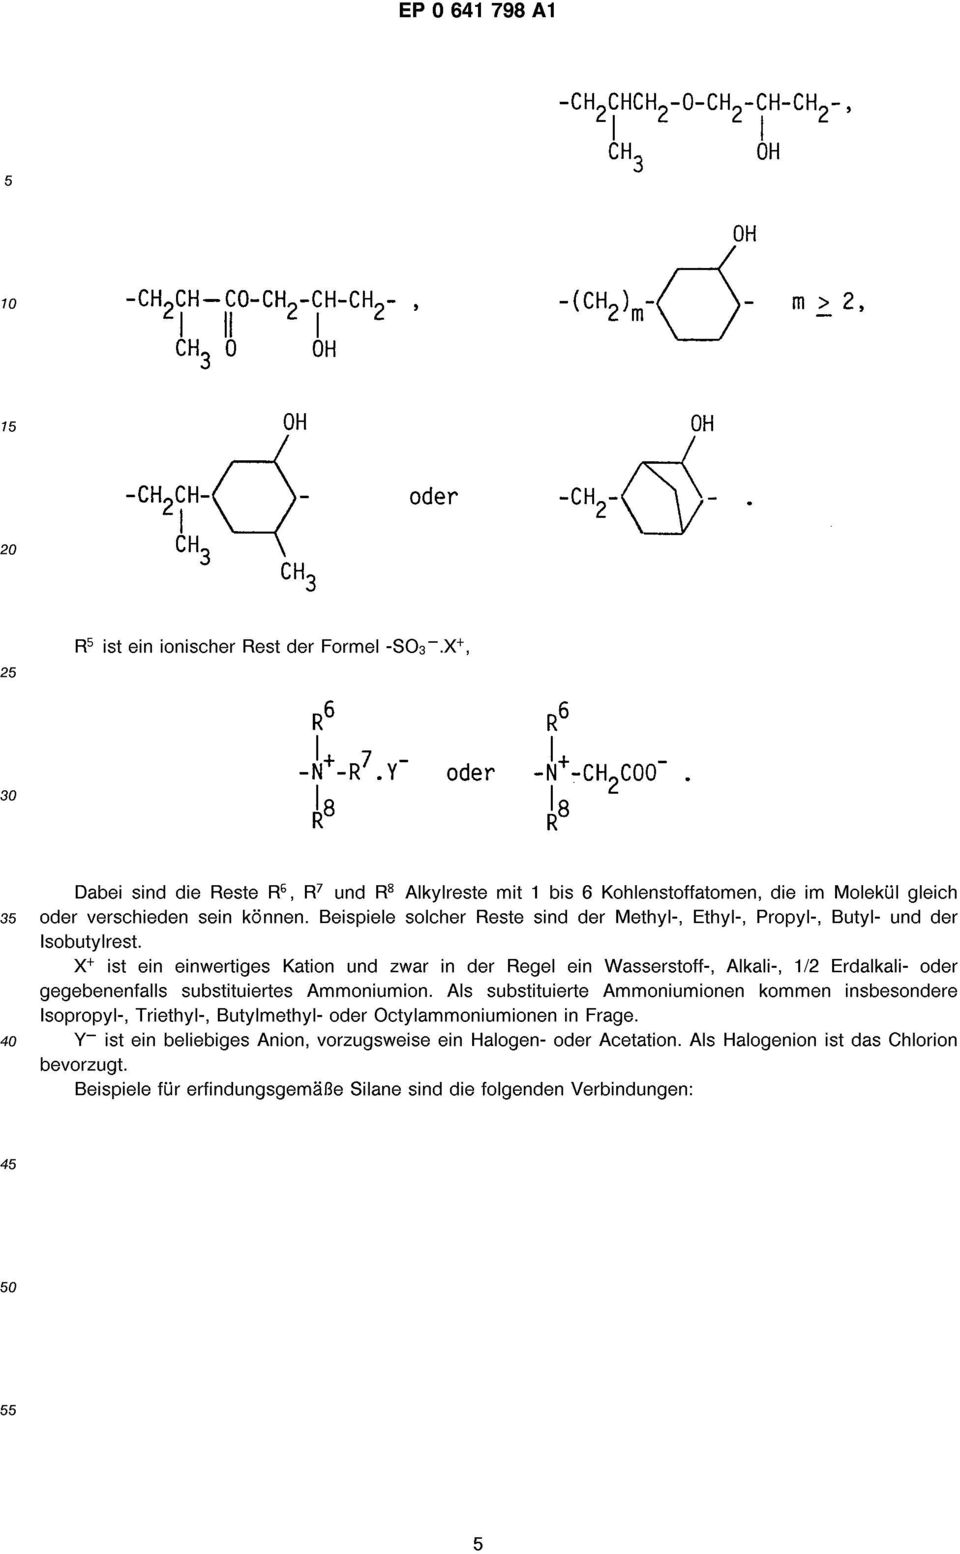 Beispiele solcher Reste sind der Methyl-, Ethyl-, Propyl-, Butyl- und der sobutylrest.